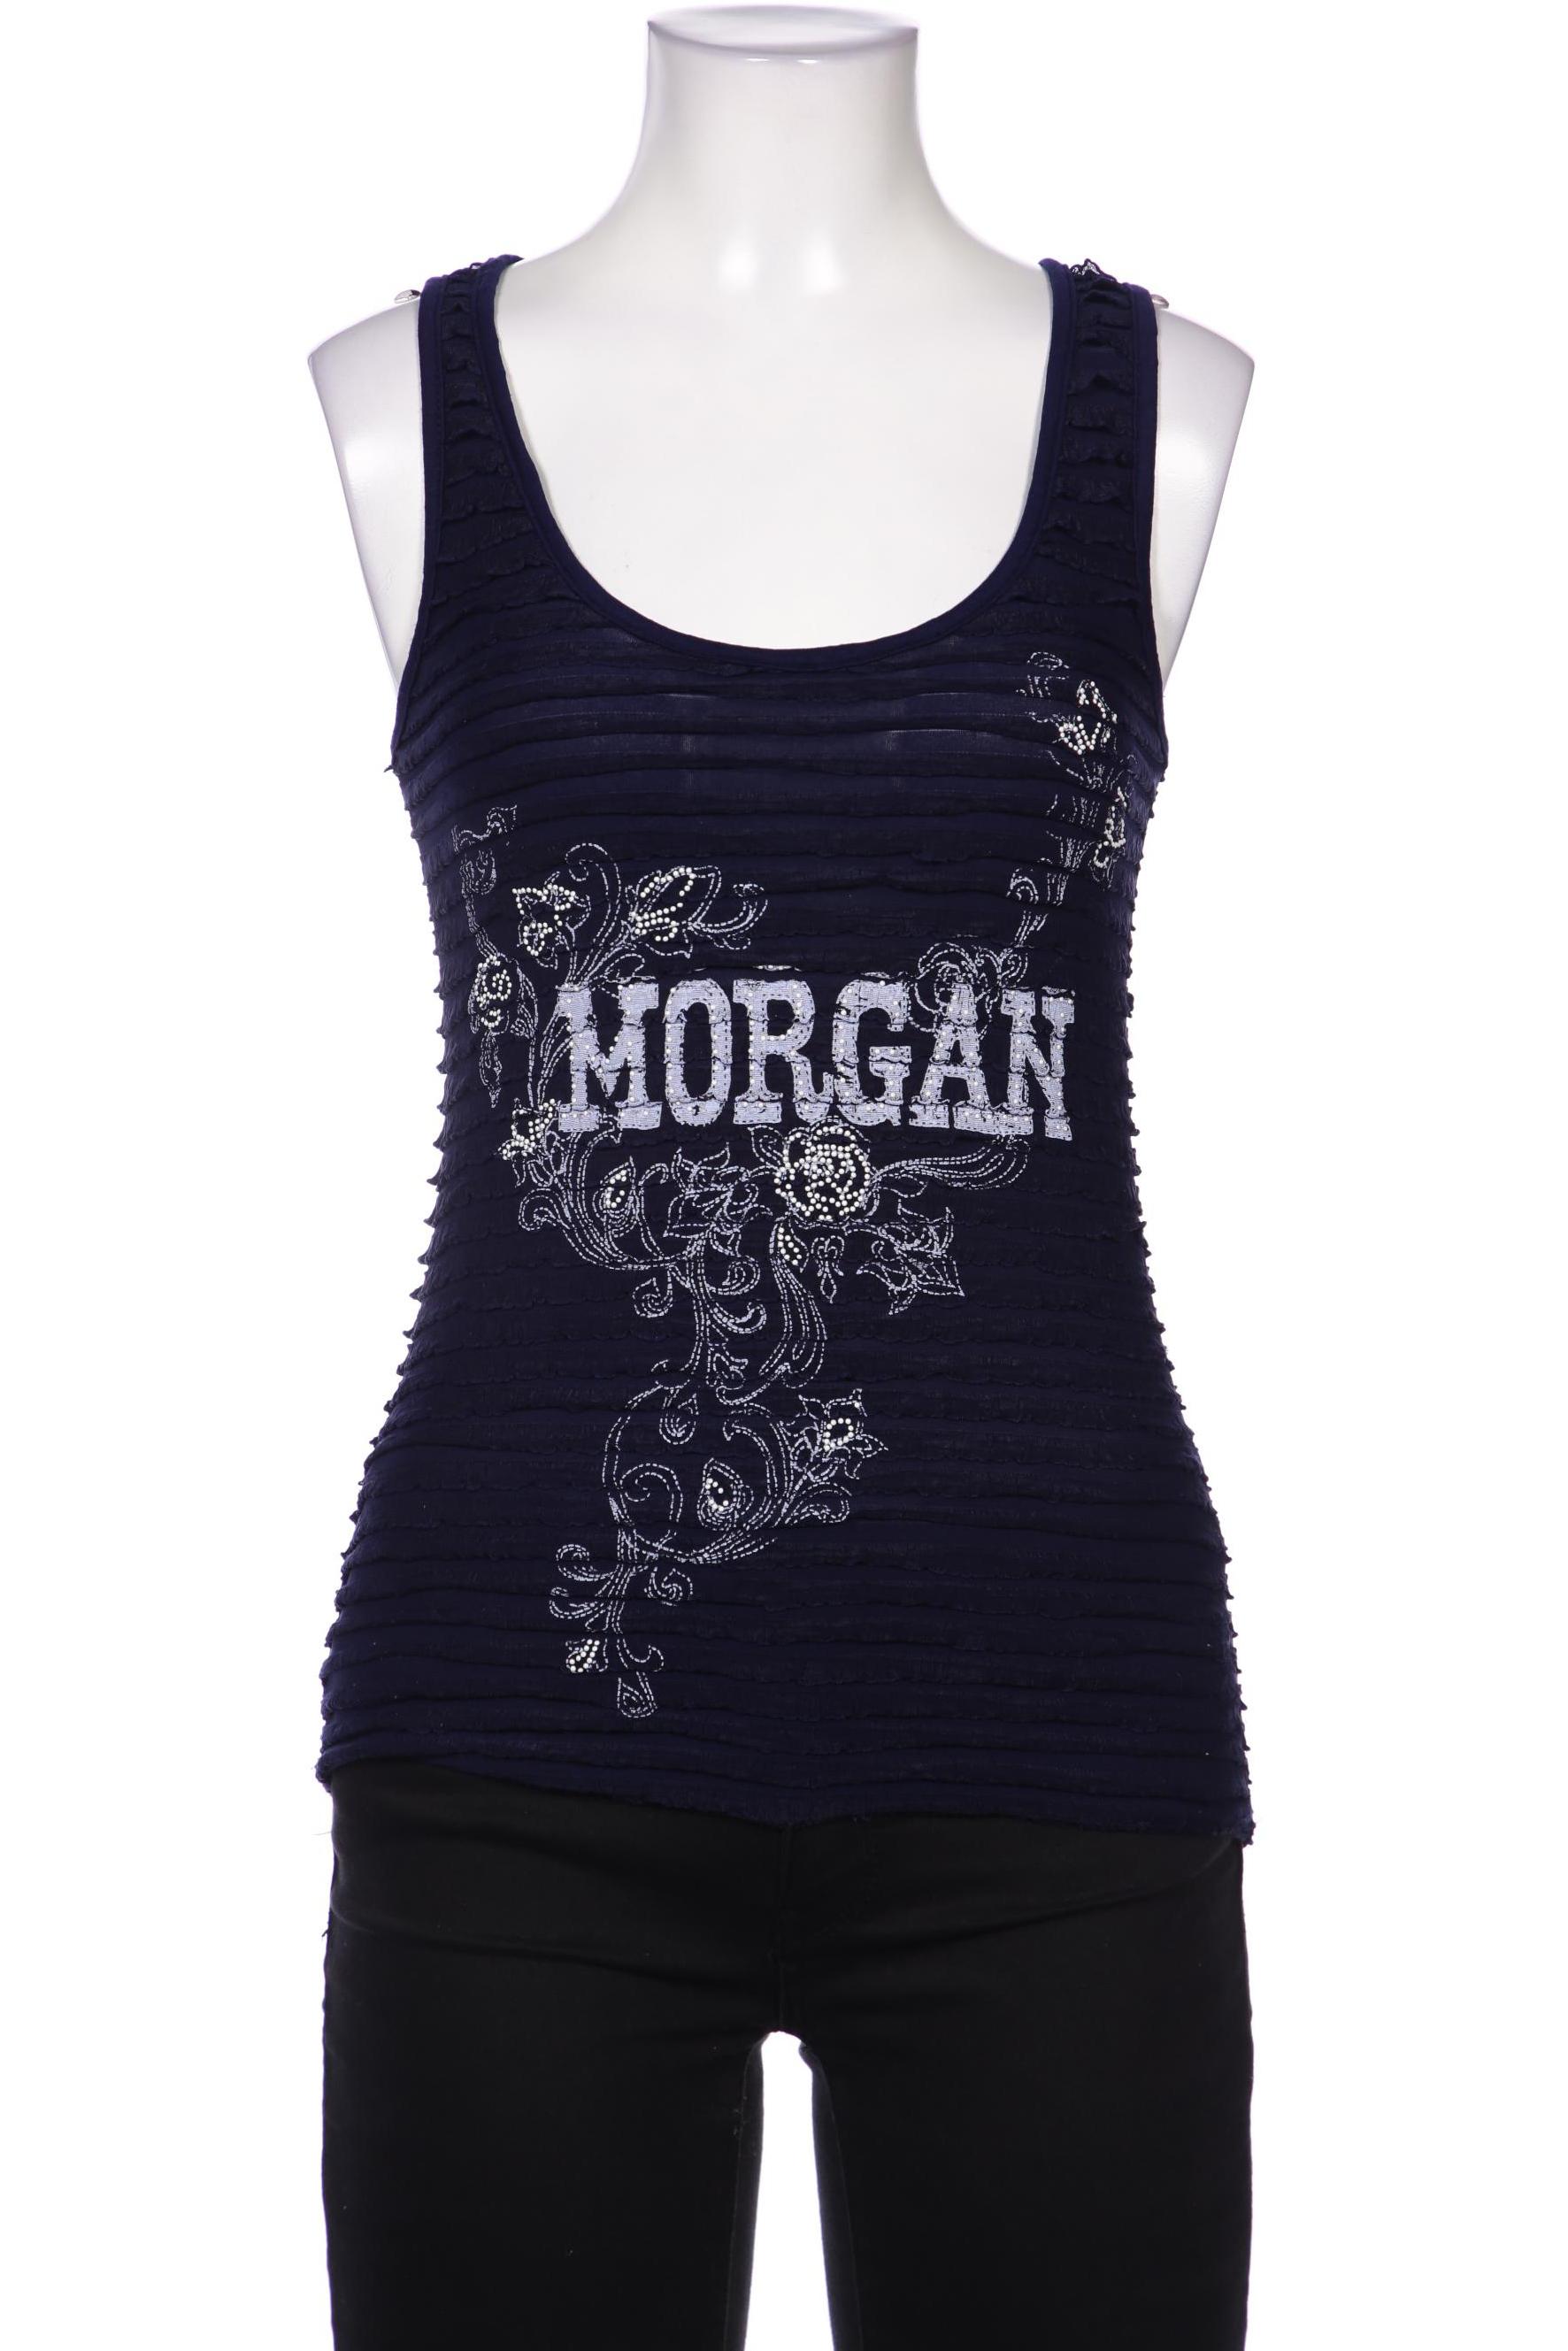 Morgan Damen Top, marineblau, Gr. 36 von Morgan